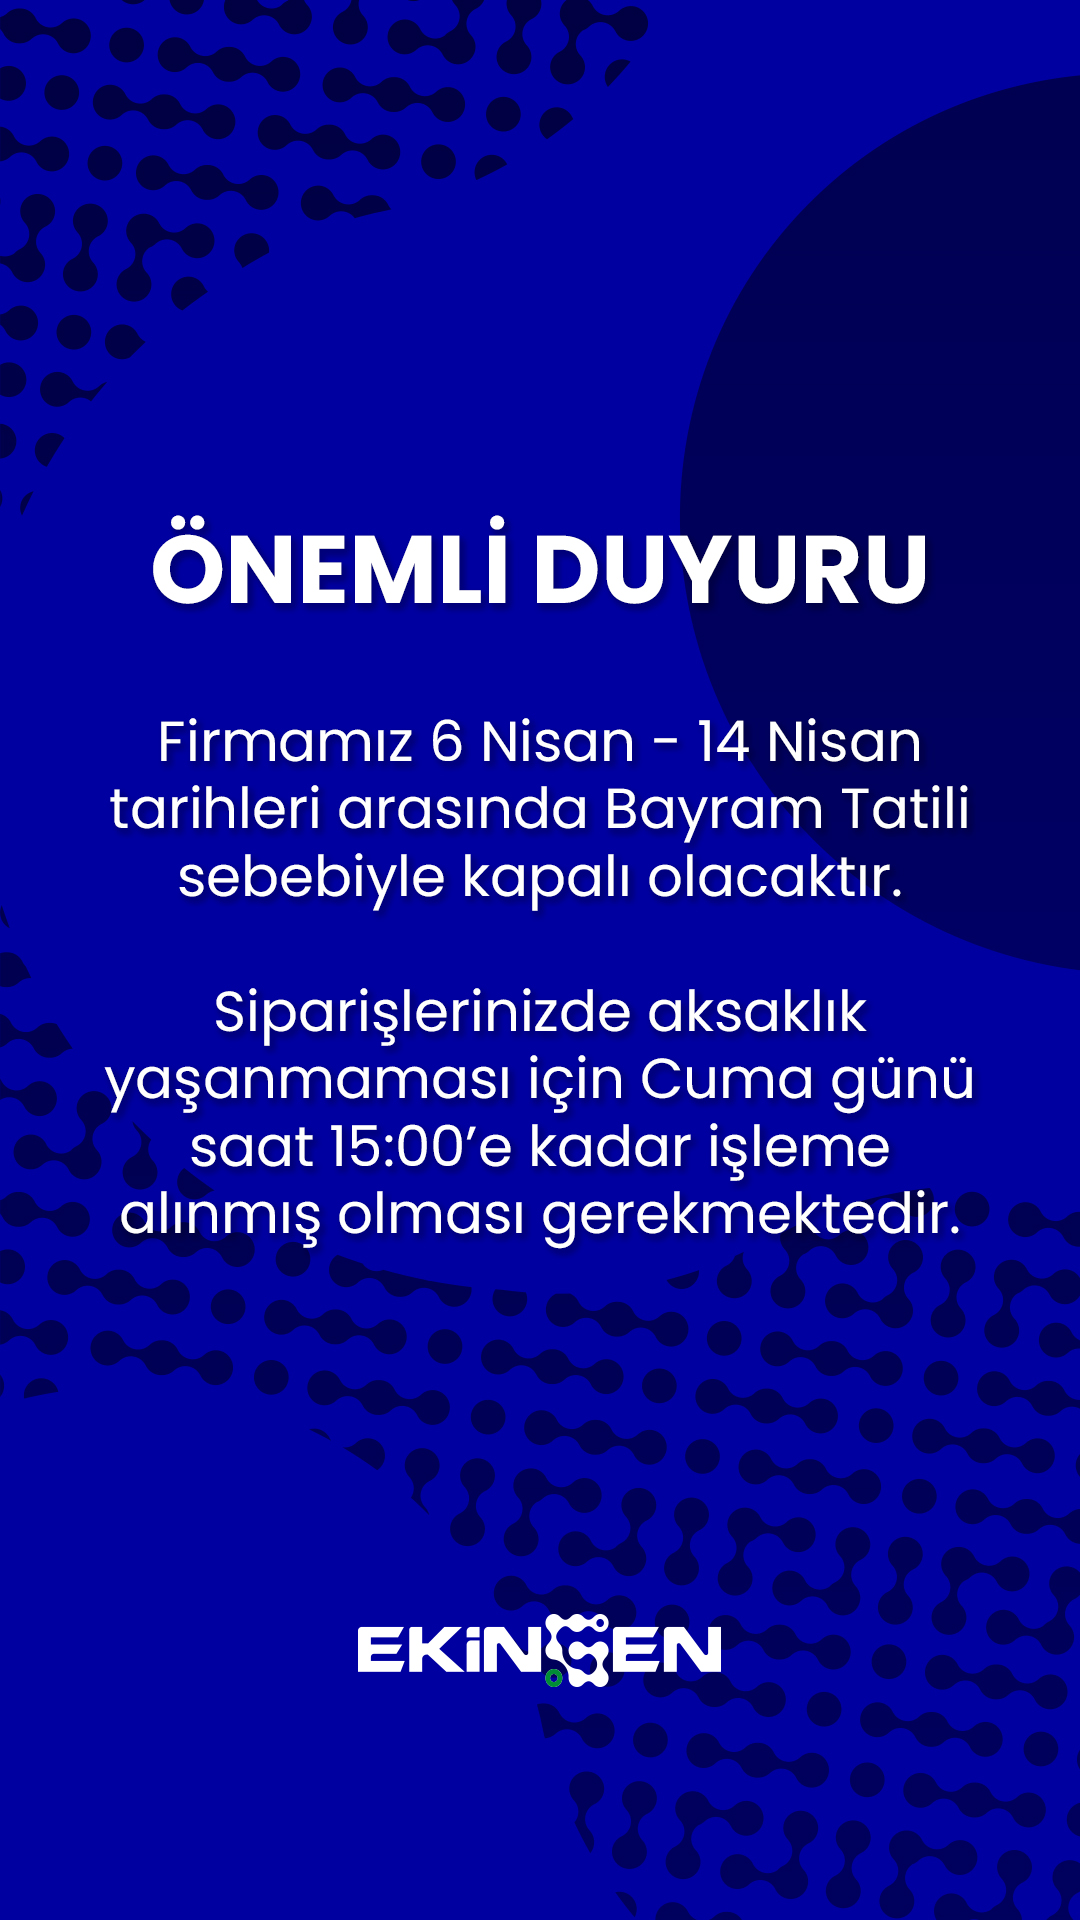 Bayram Tatili.jpg (607 KB)